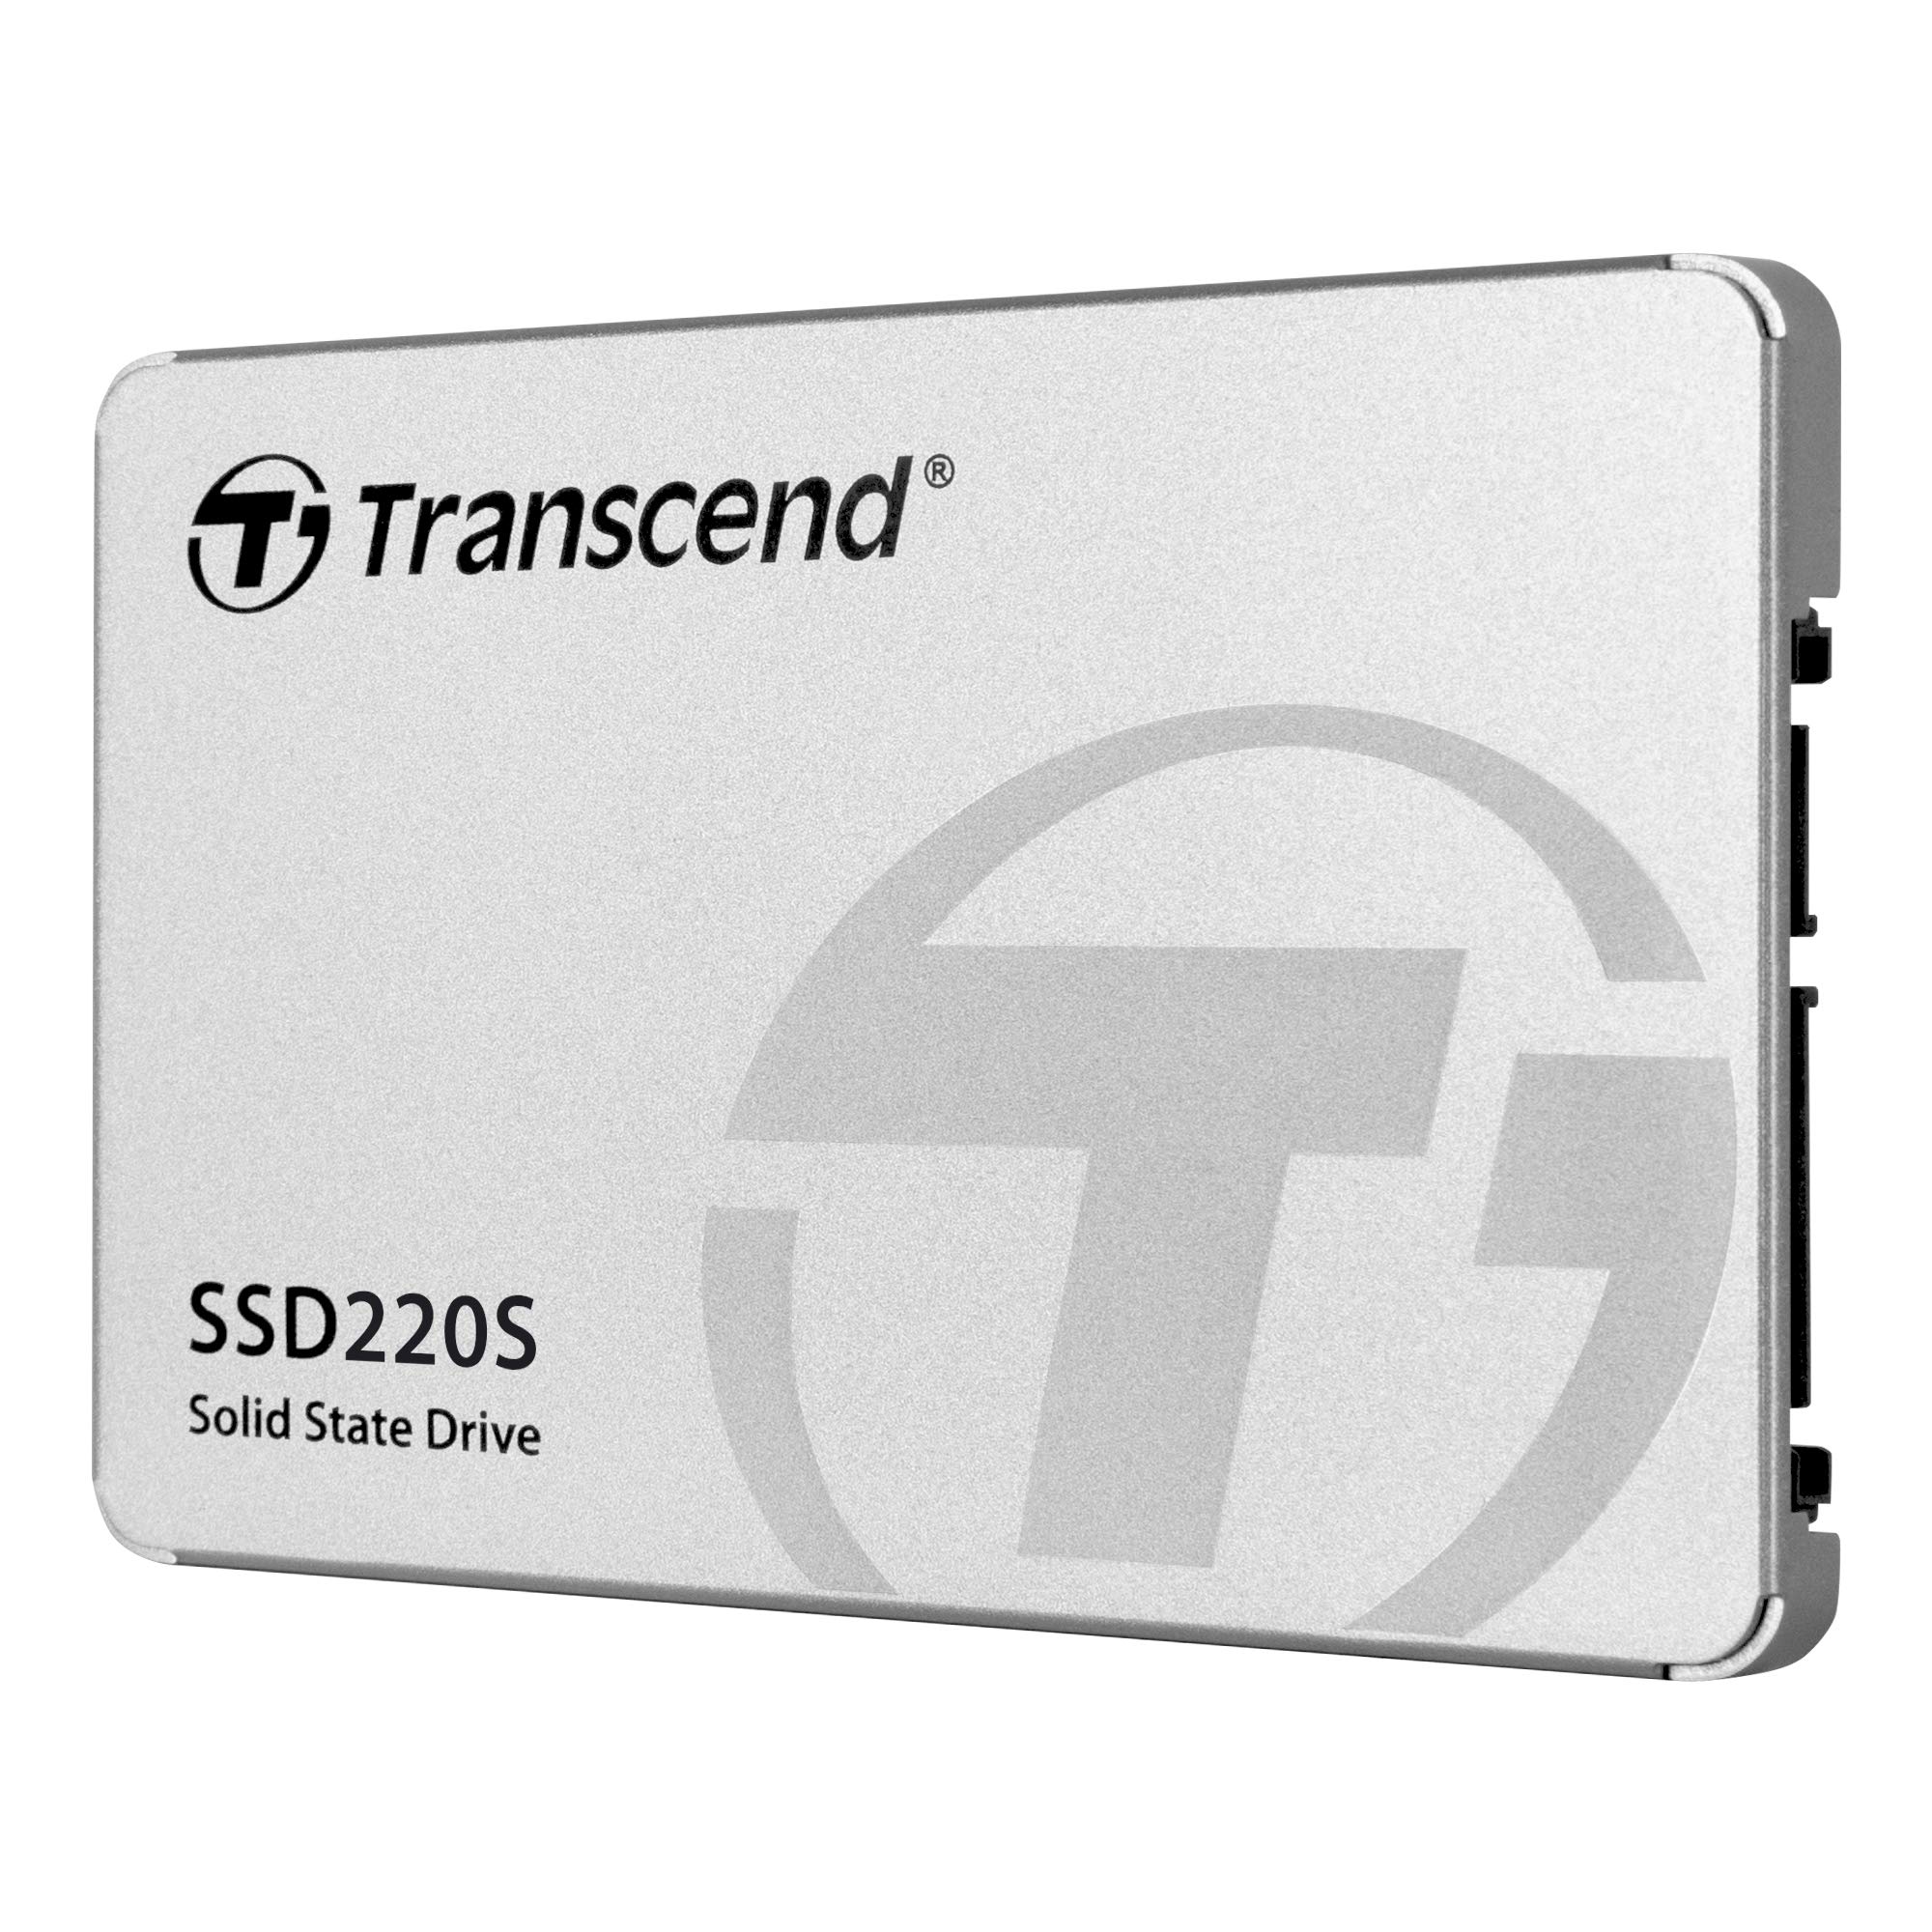 Transcend 240GB SATA III 6Gb/s SSD220S 2.5” SSD TS240GSSD220S